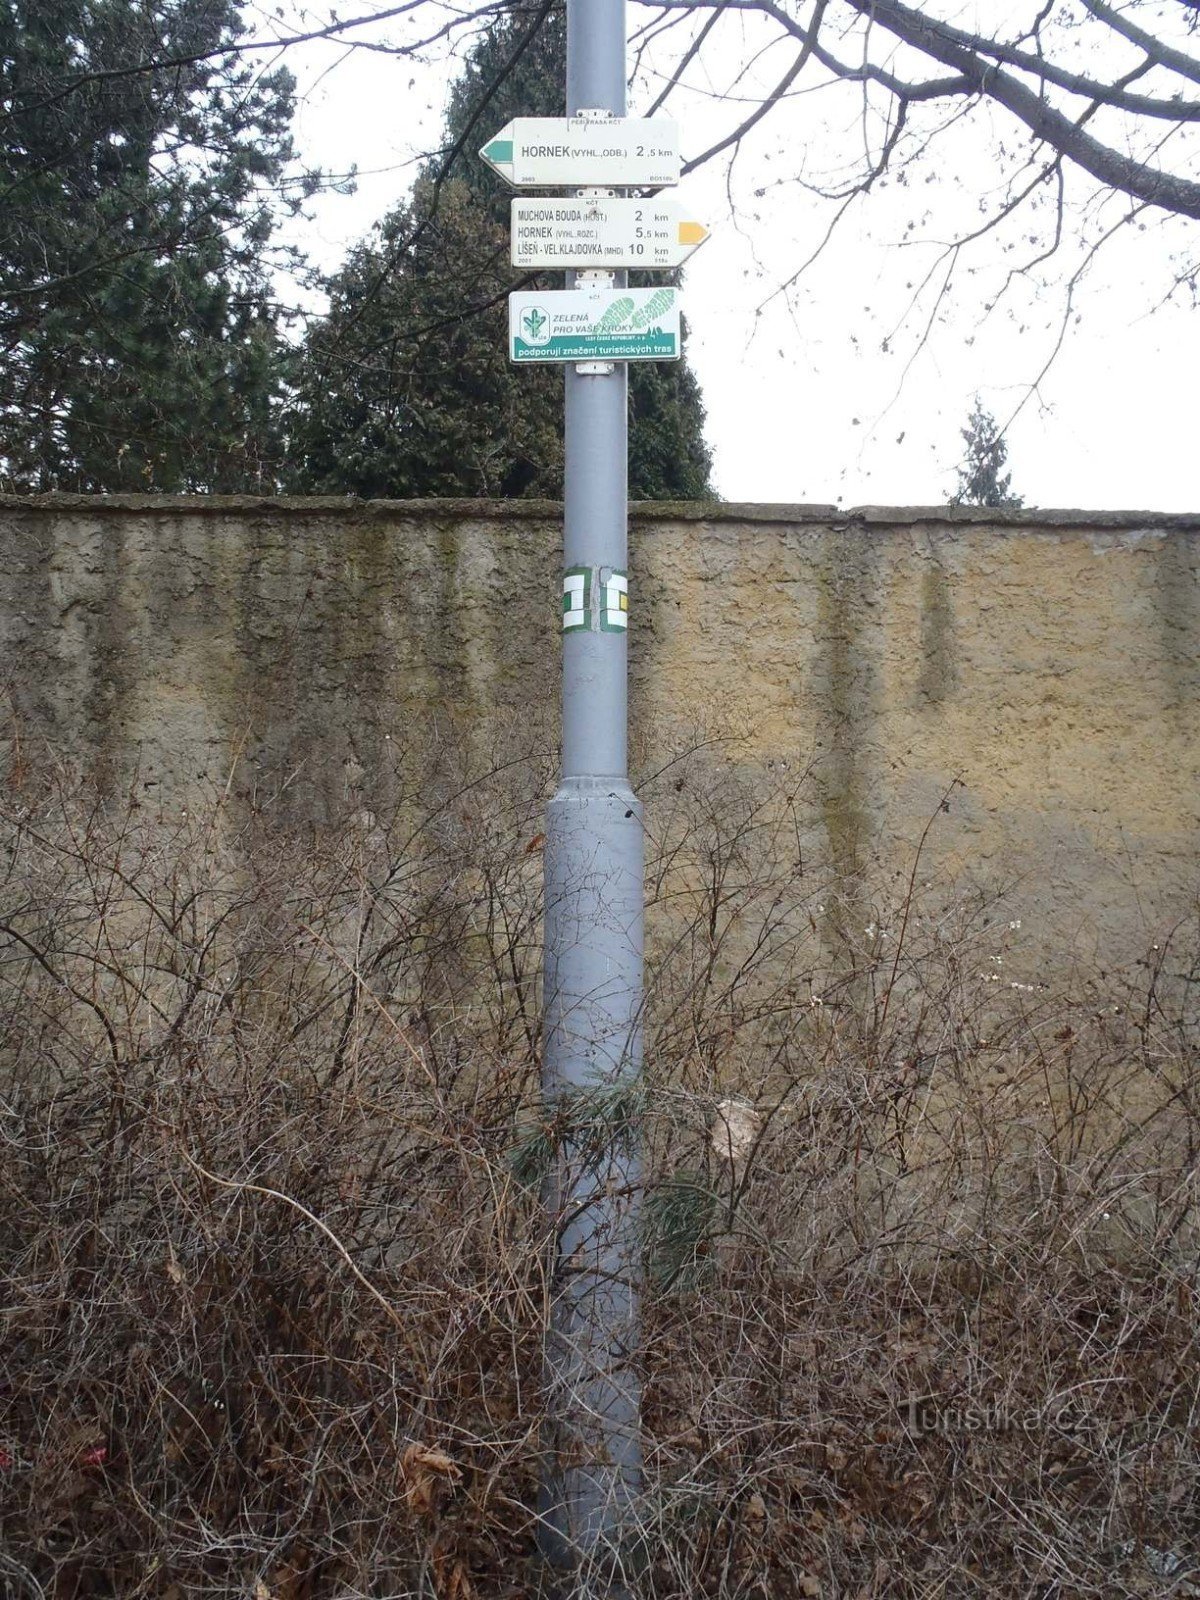 Placa de sinalização Brno Líšeň (transporte público) - 6.2.2012 de fevereiro de XNUMX